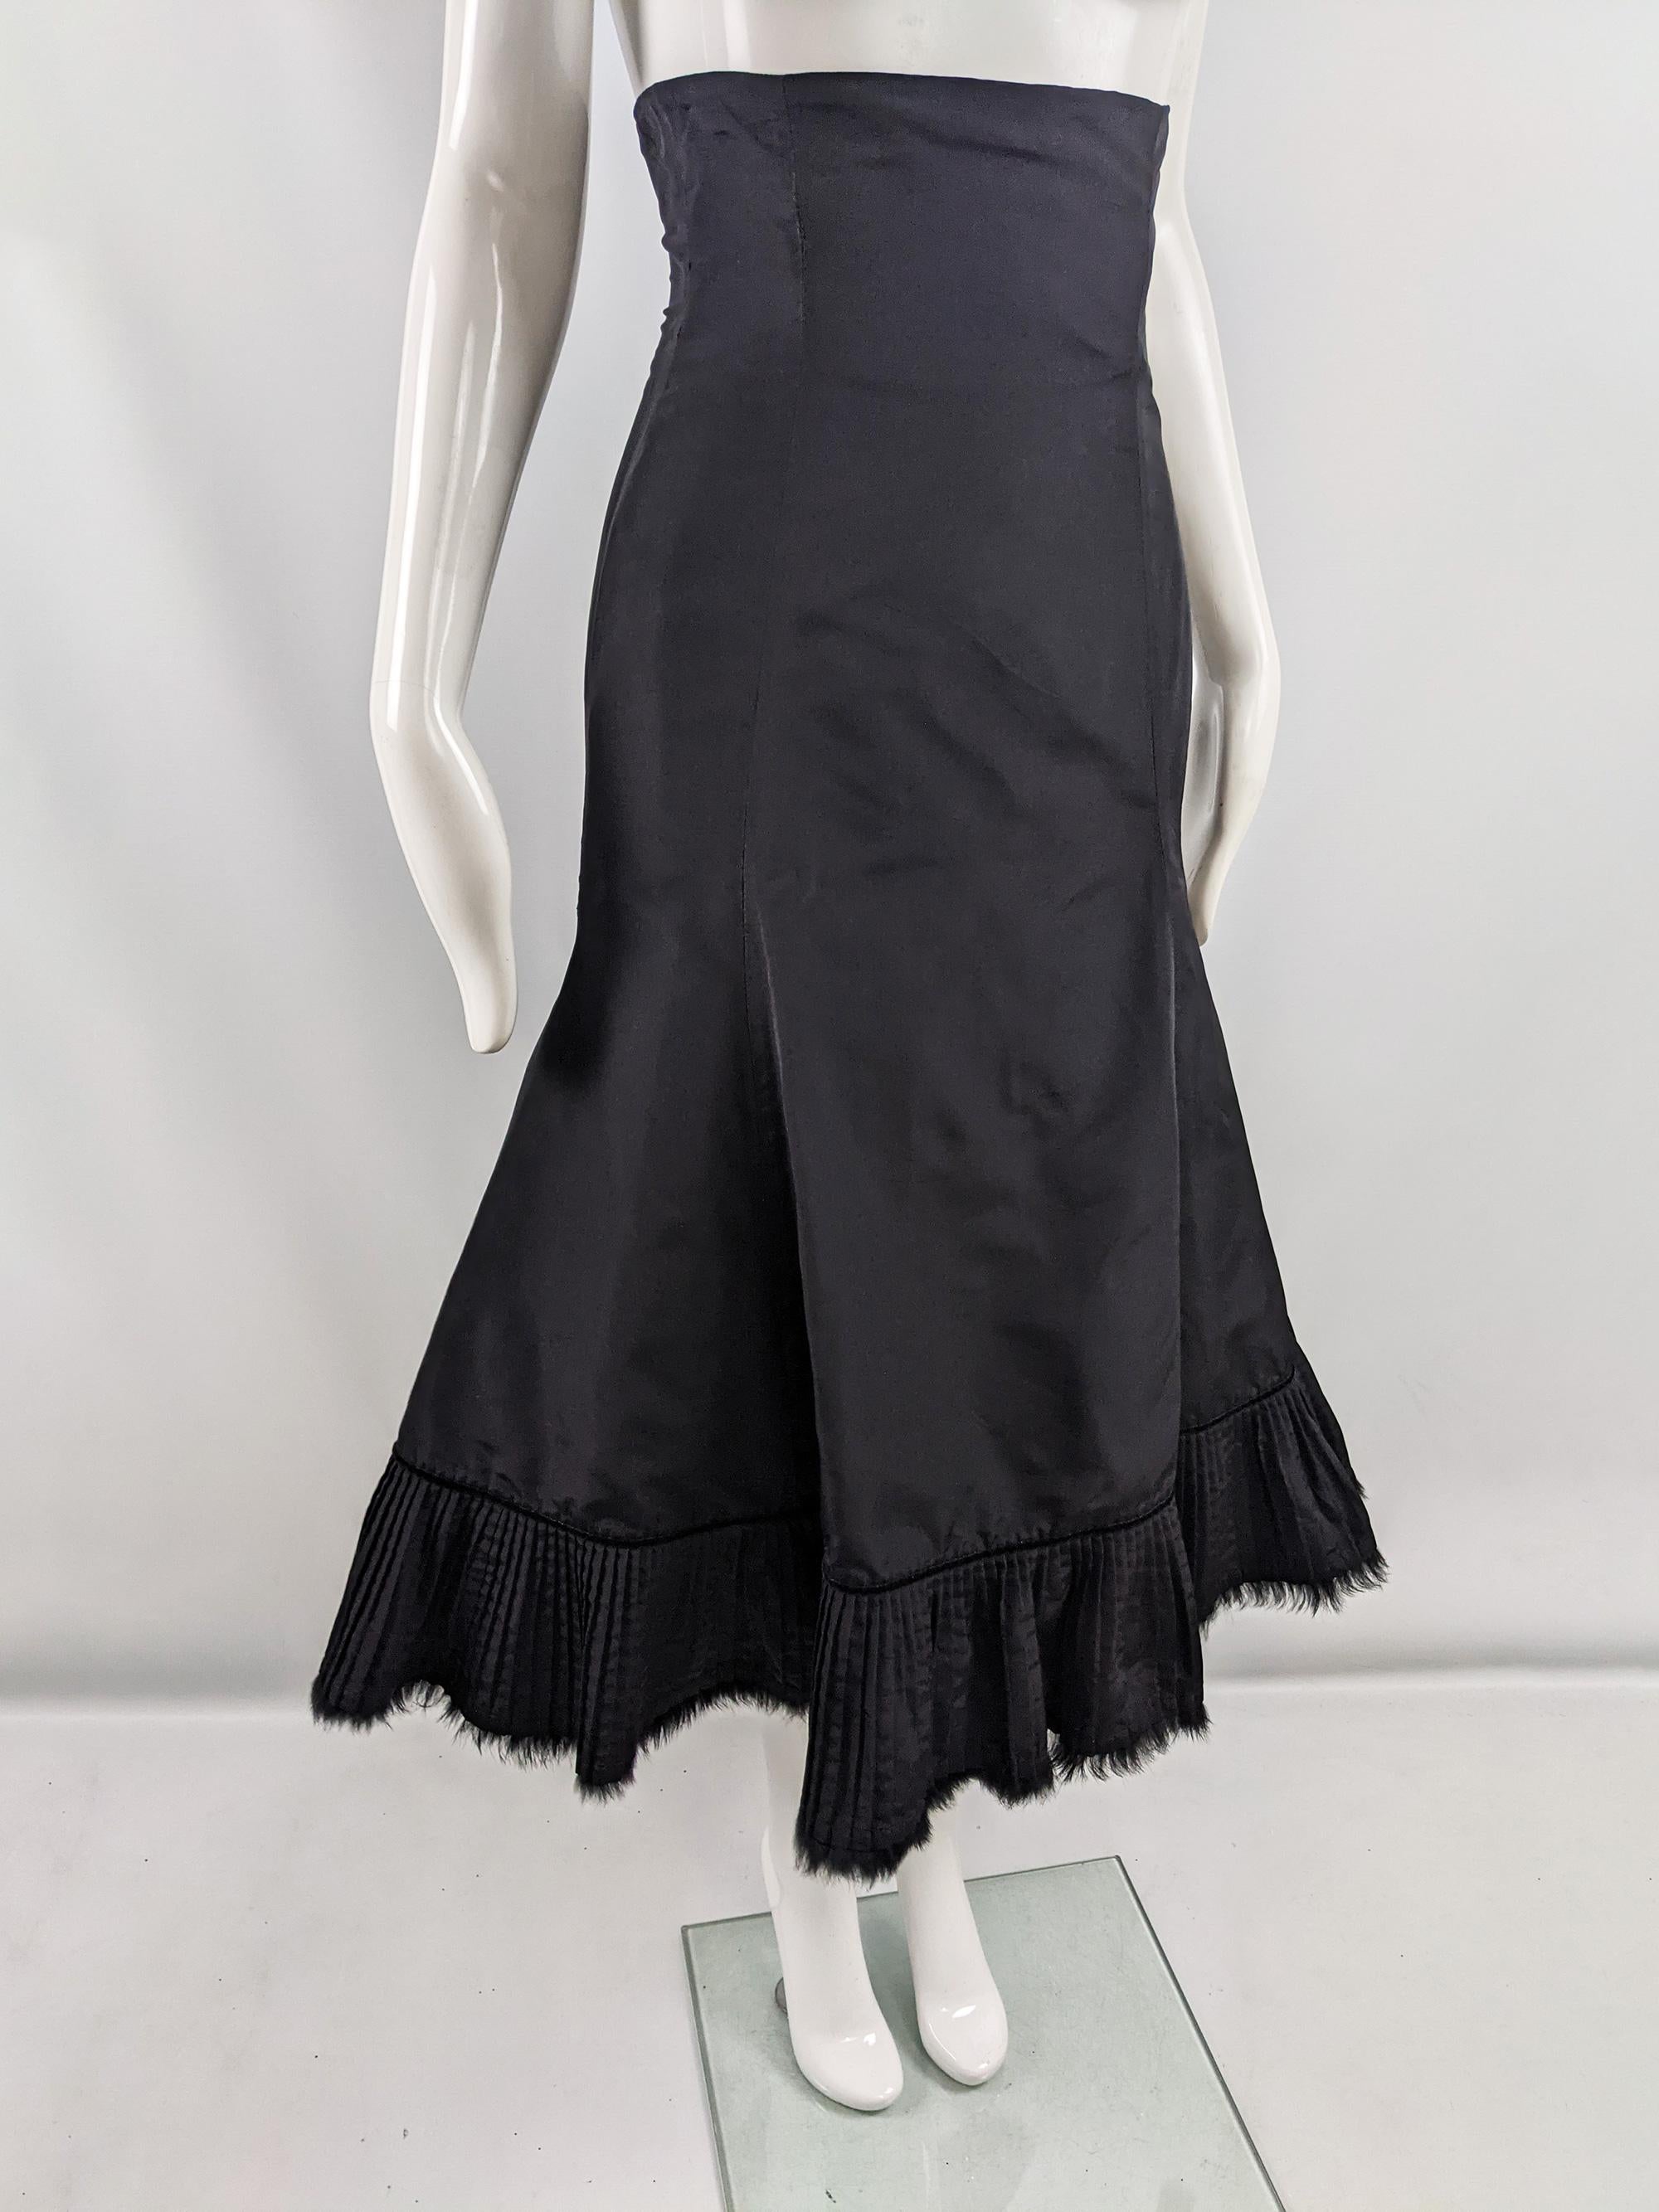 Alexander McQueen Black Taffeta Ultra High Waist Fur Trim Fishtail Skirt, 2005 For Sale 2